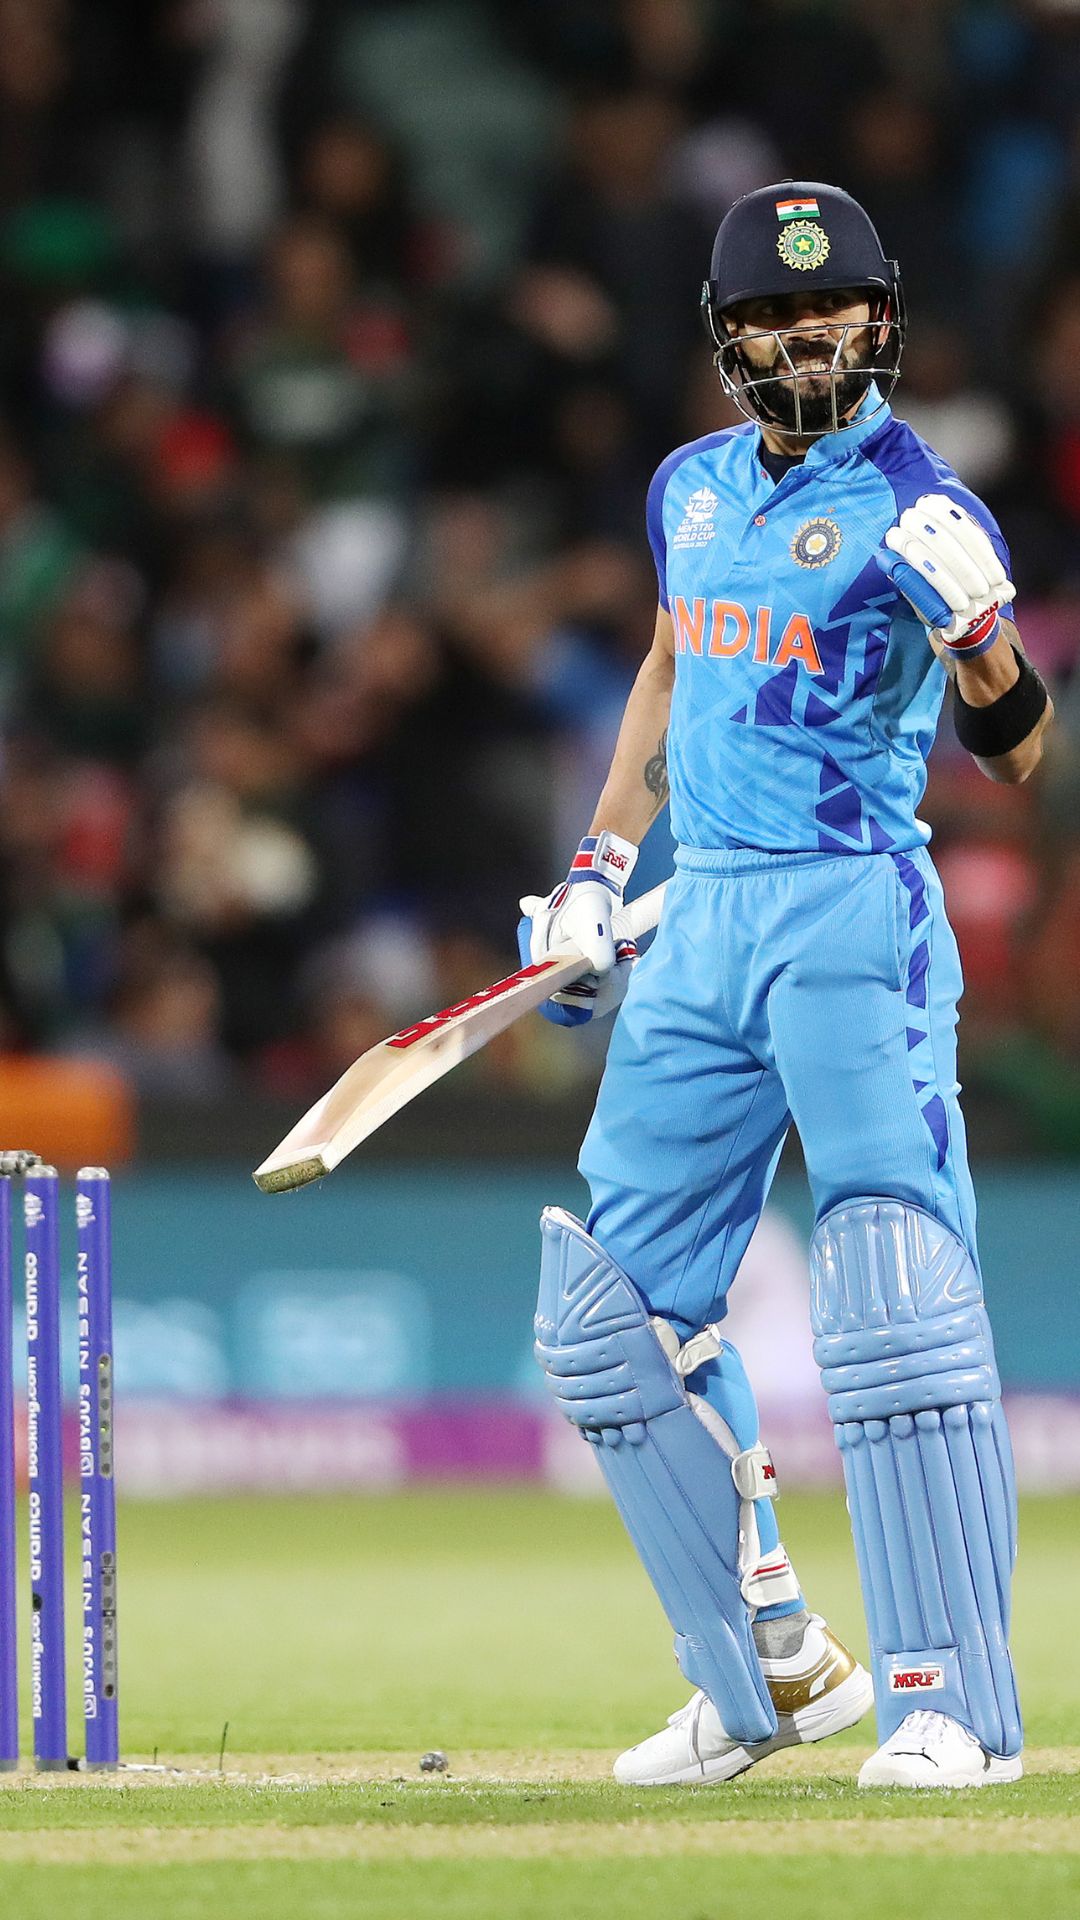 Virat Kohli's T20 World Cup record